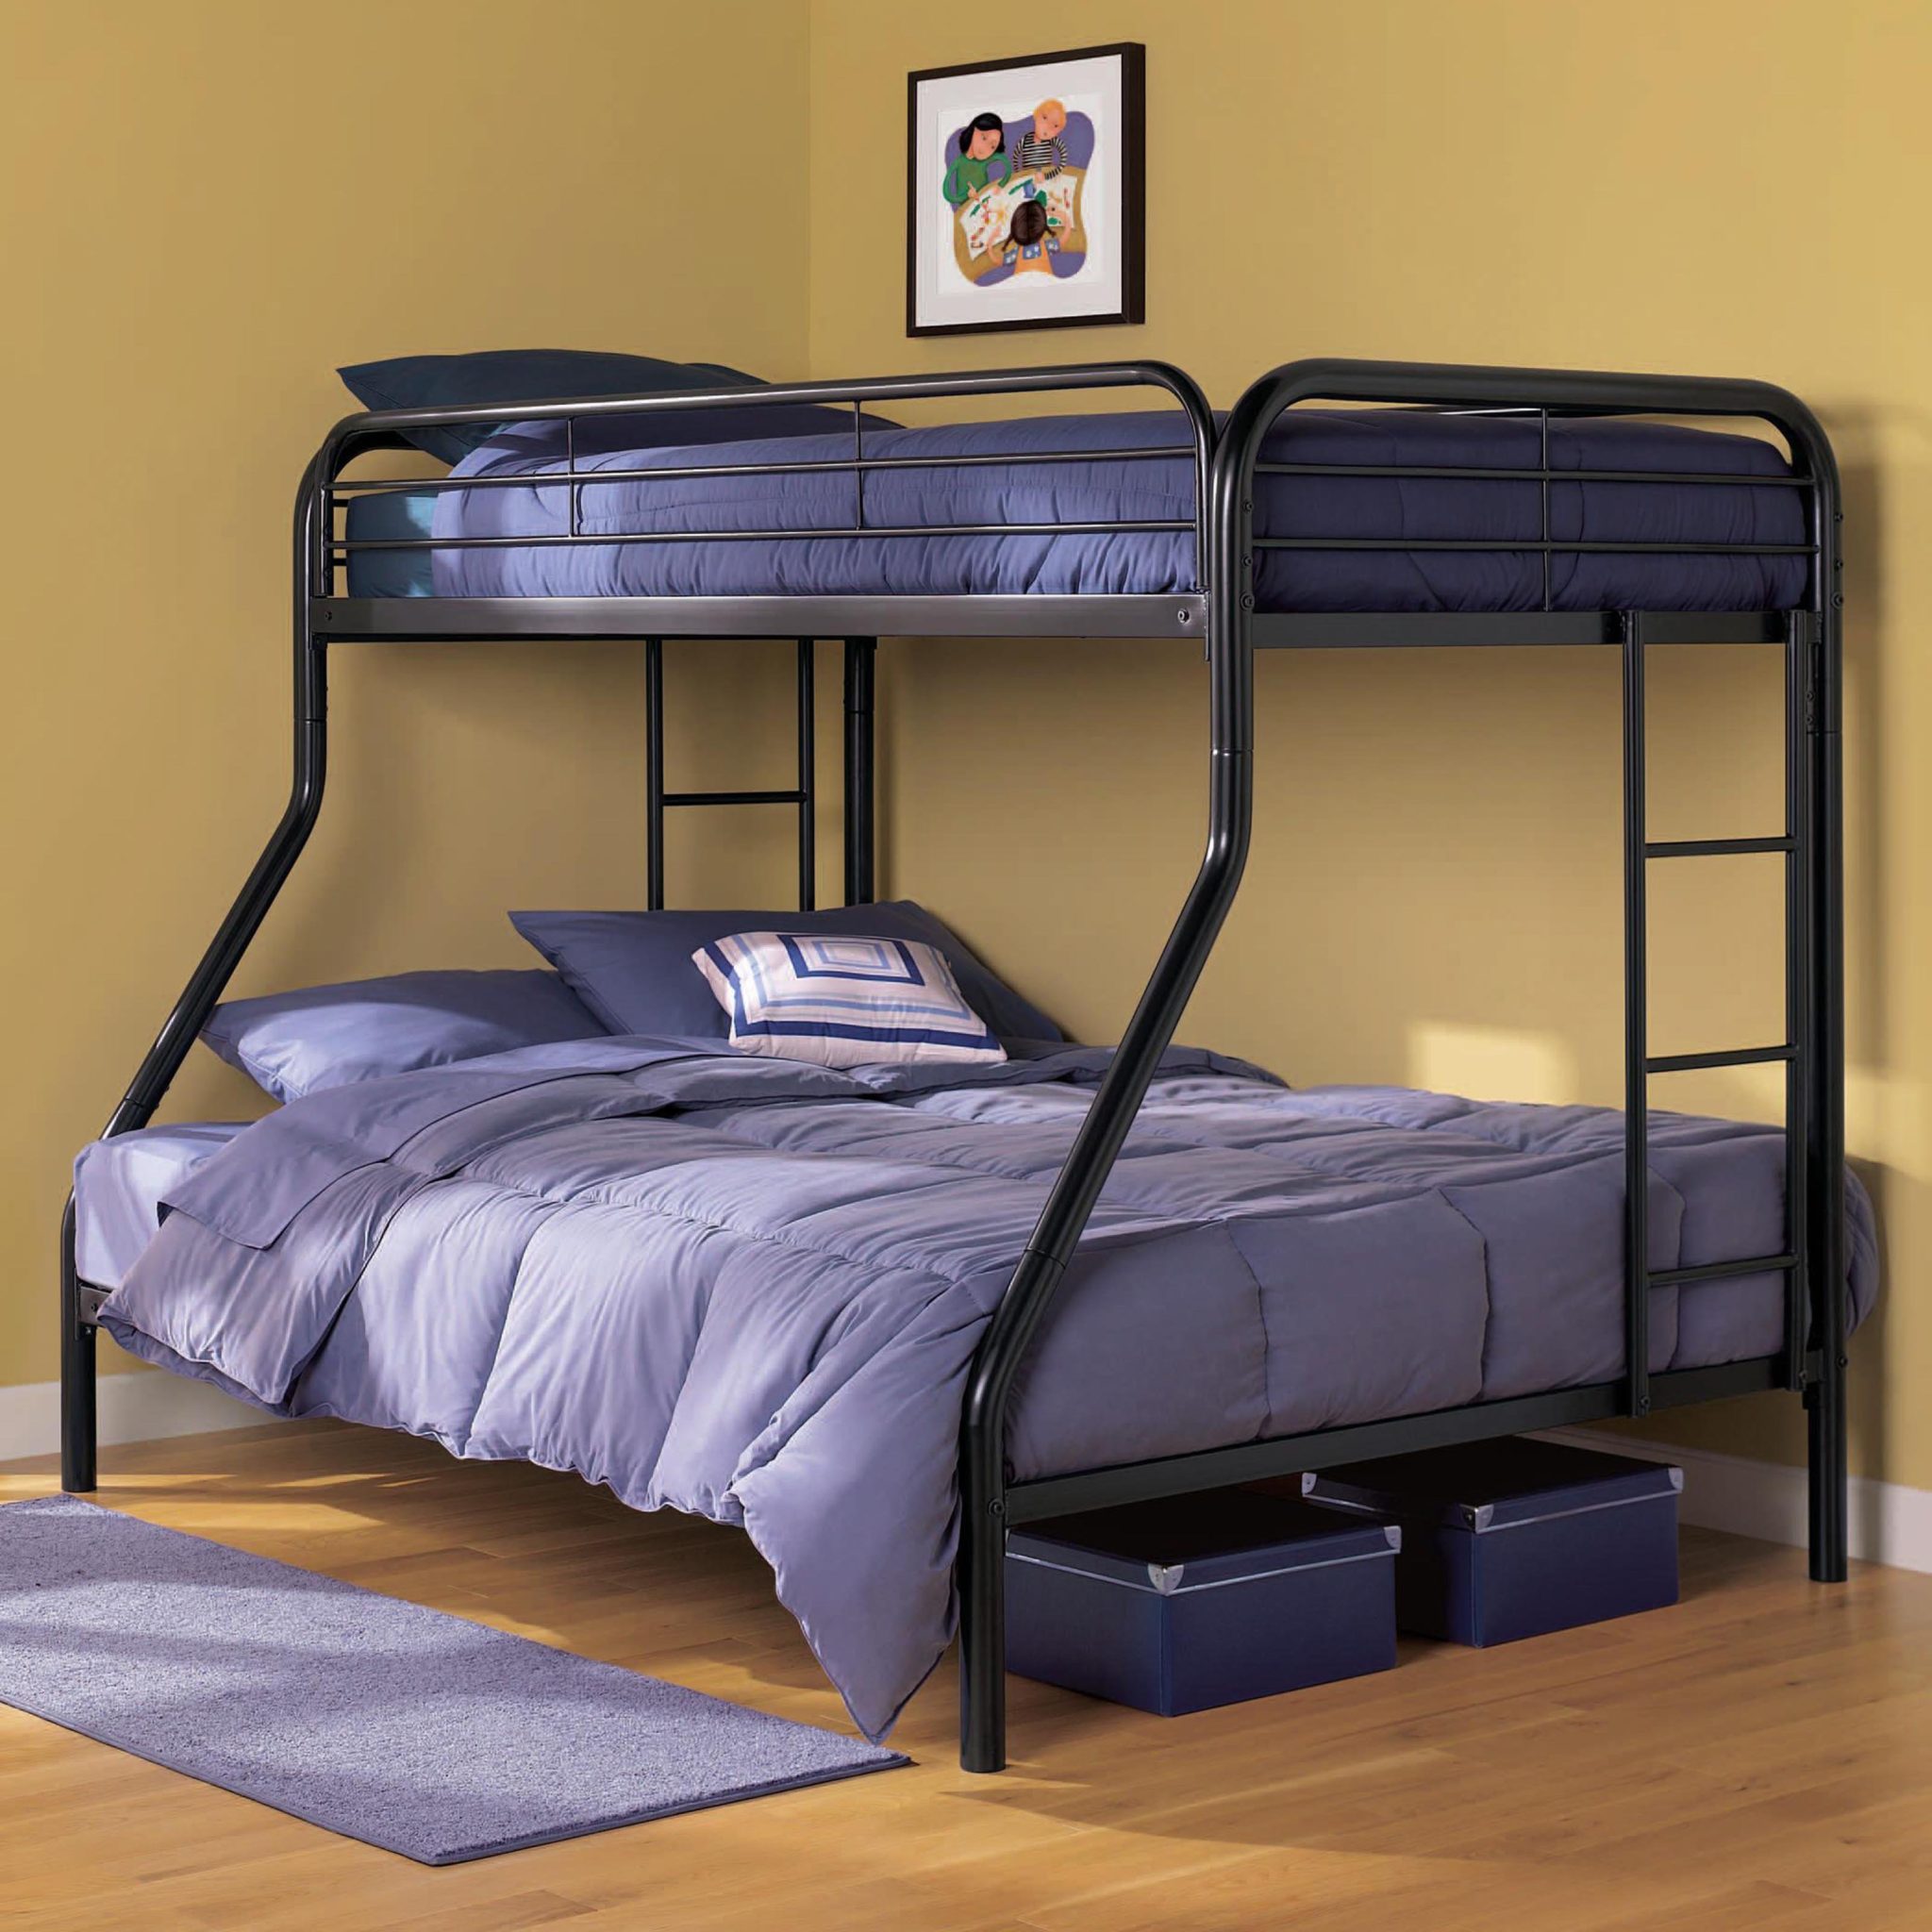 Двухъярусная кровать Gunmetal Full/Full Bunk Bed